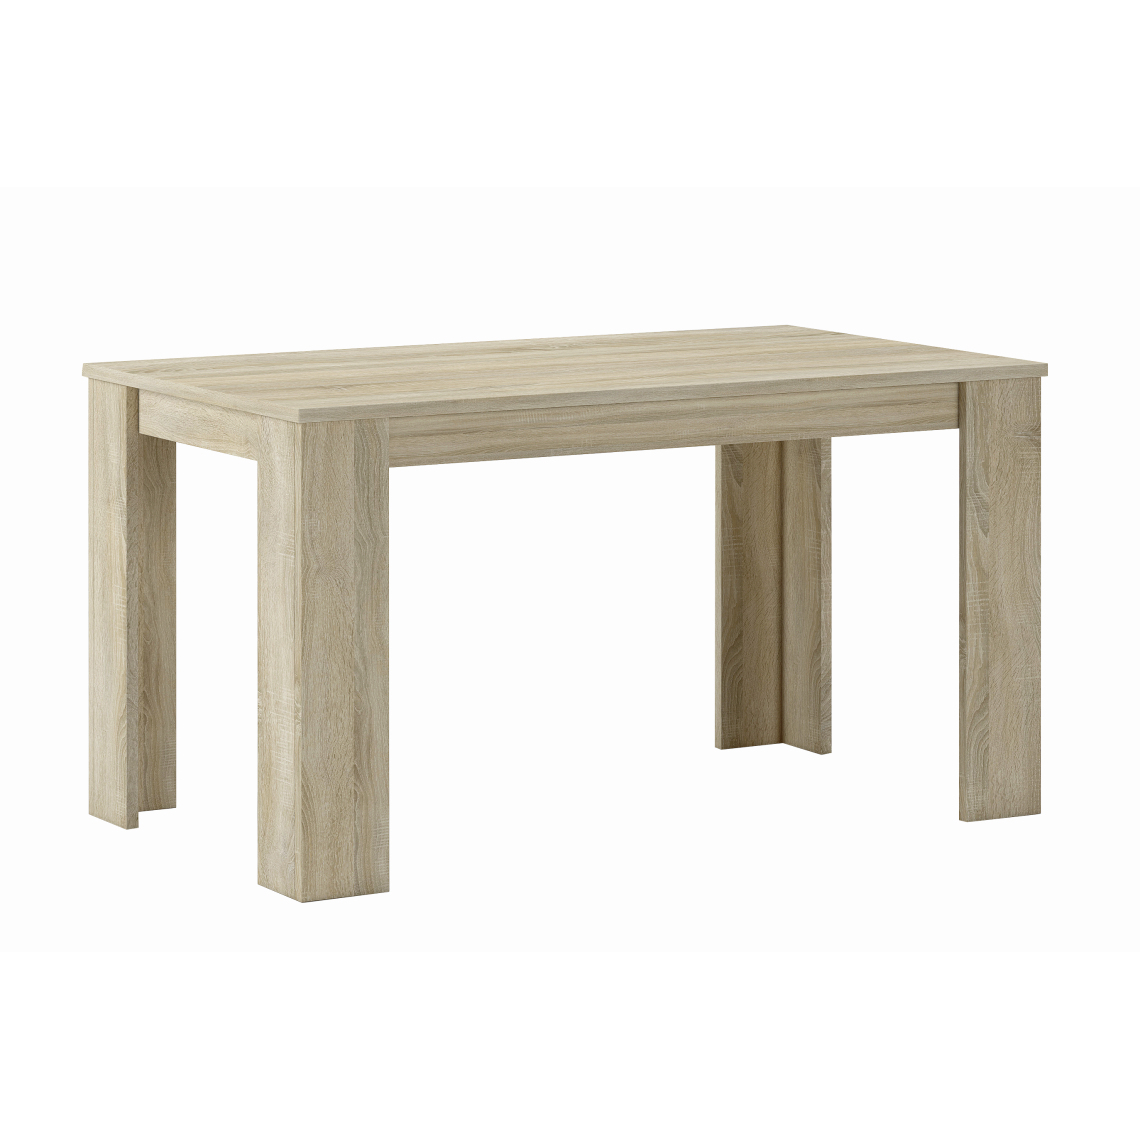 Skraut Home - Table de salle à manger-séjour, chêne clair,80x138x75cm - Tables à manger